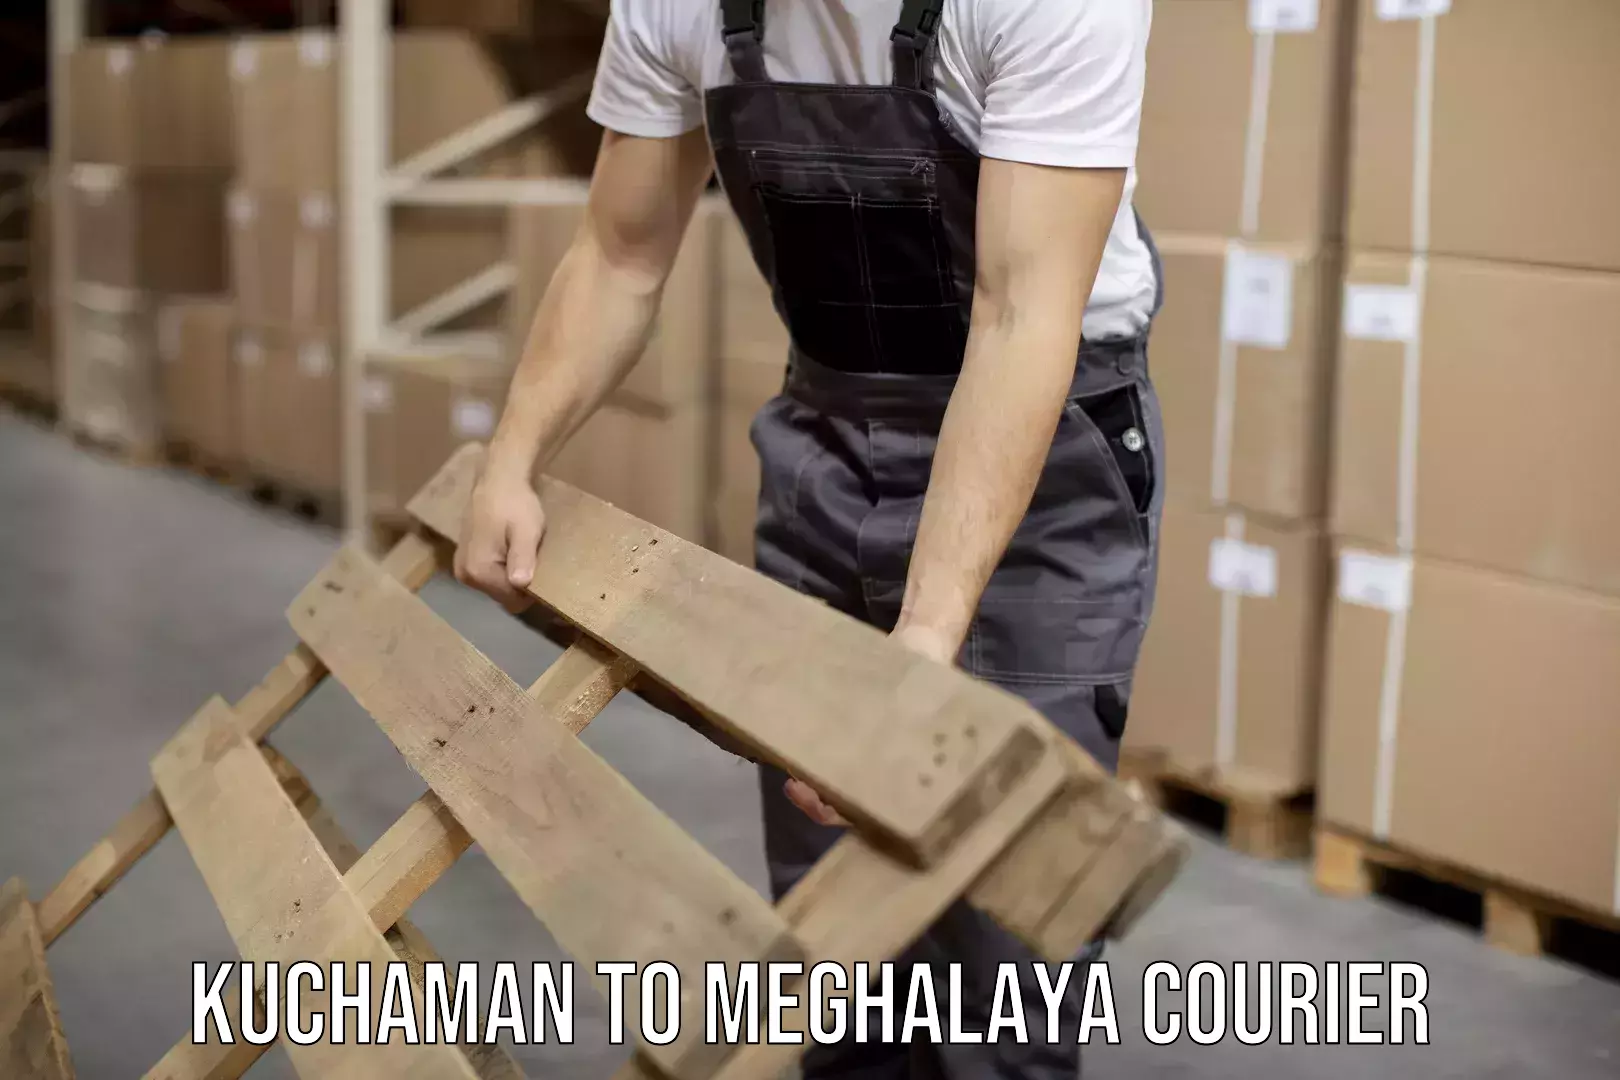 Business shipping needs Kuchaman to Meghalaya